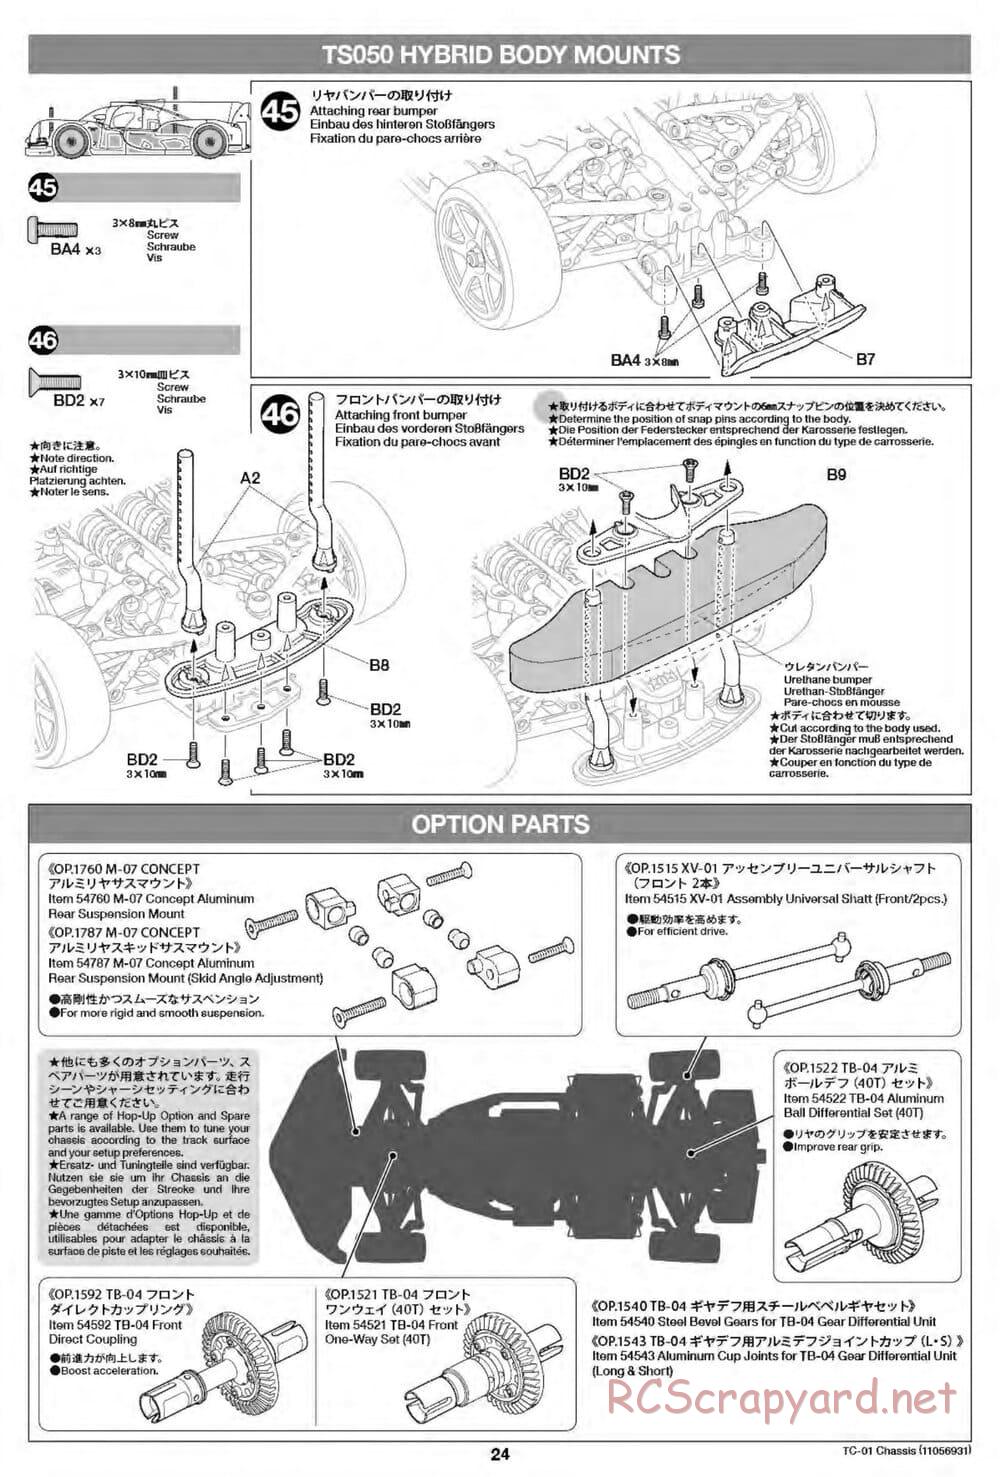 Tamiya - TC-01 Chassis - Manual - Page 24